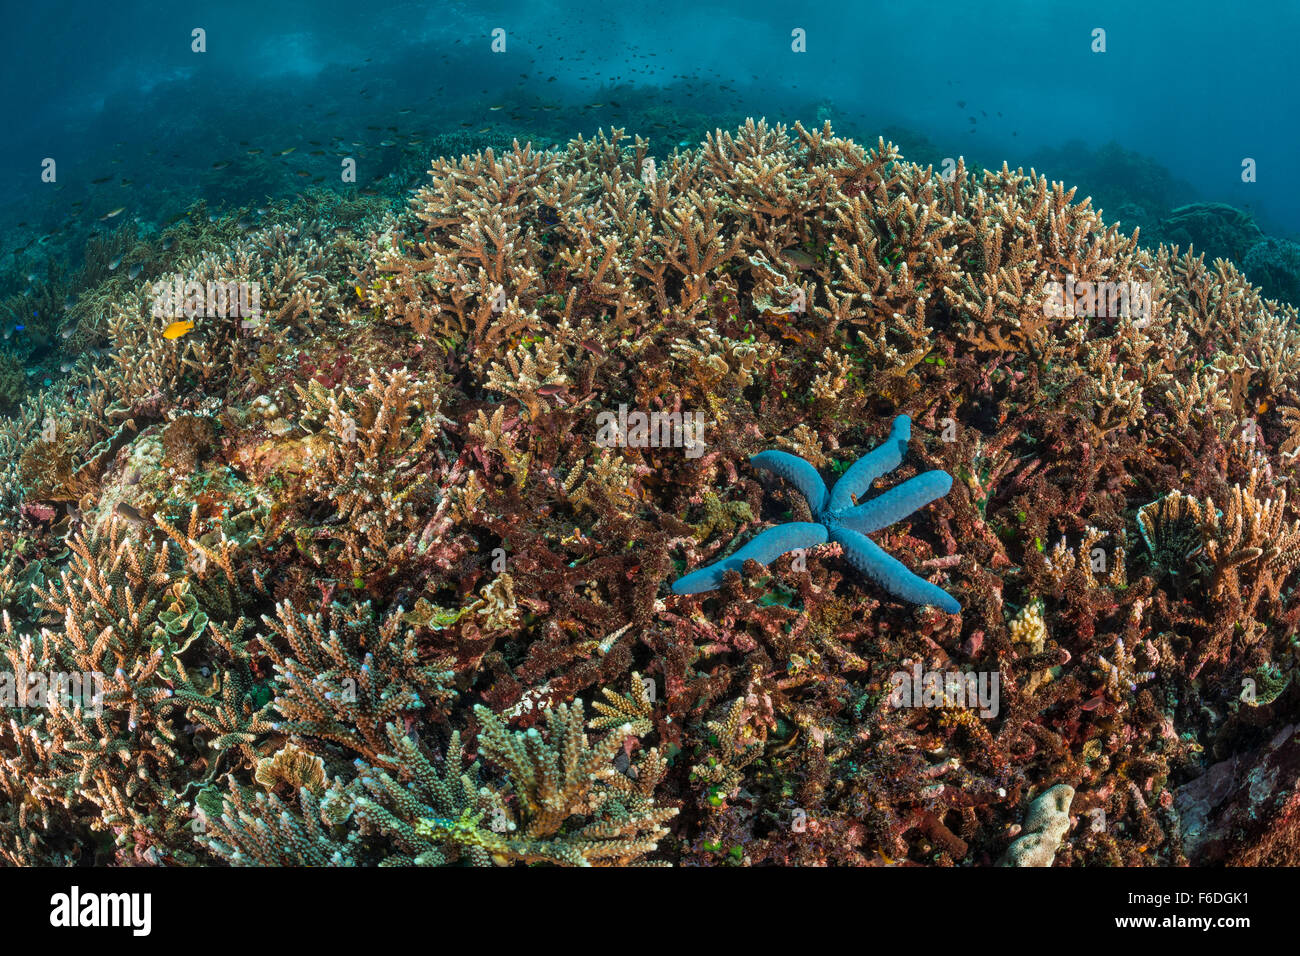 Corallo duro sulla cima della scogliera, Acropora sp., Alor, Indonesia Foto Stock